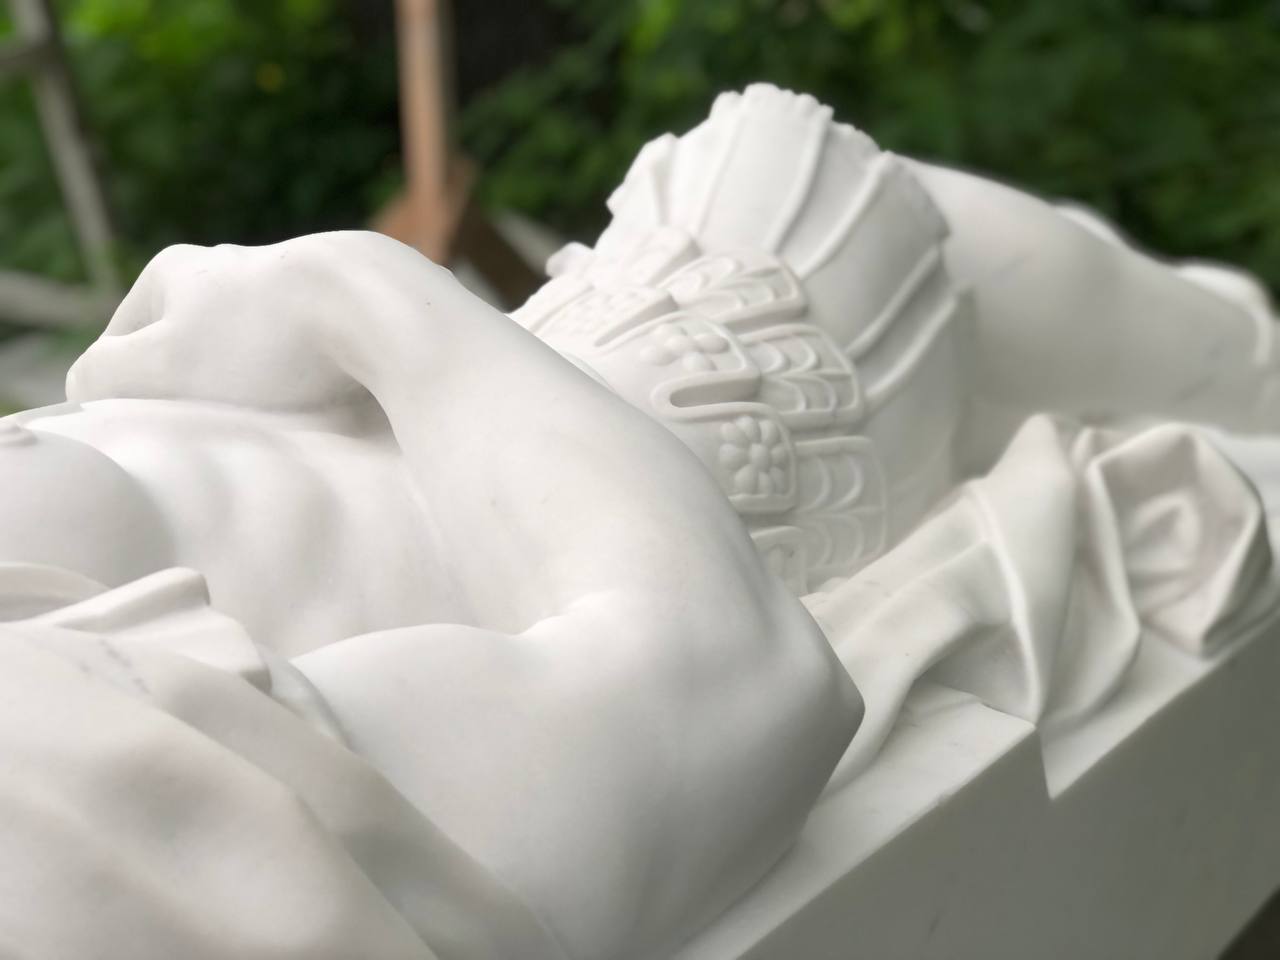 Скульптура Св. Себастьяна из белого мрамора